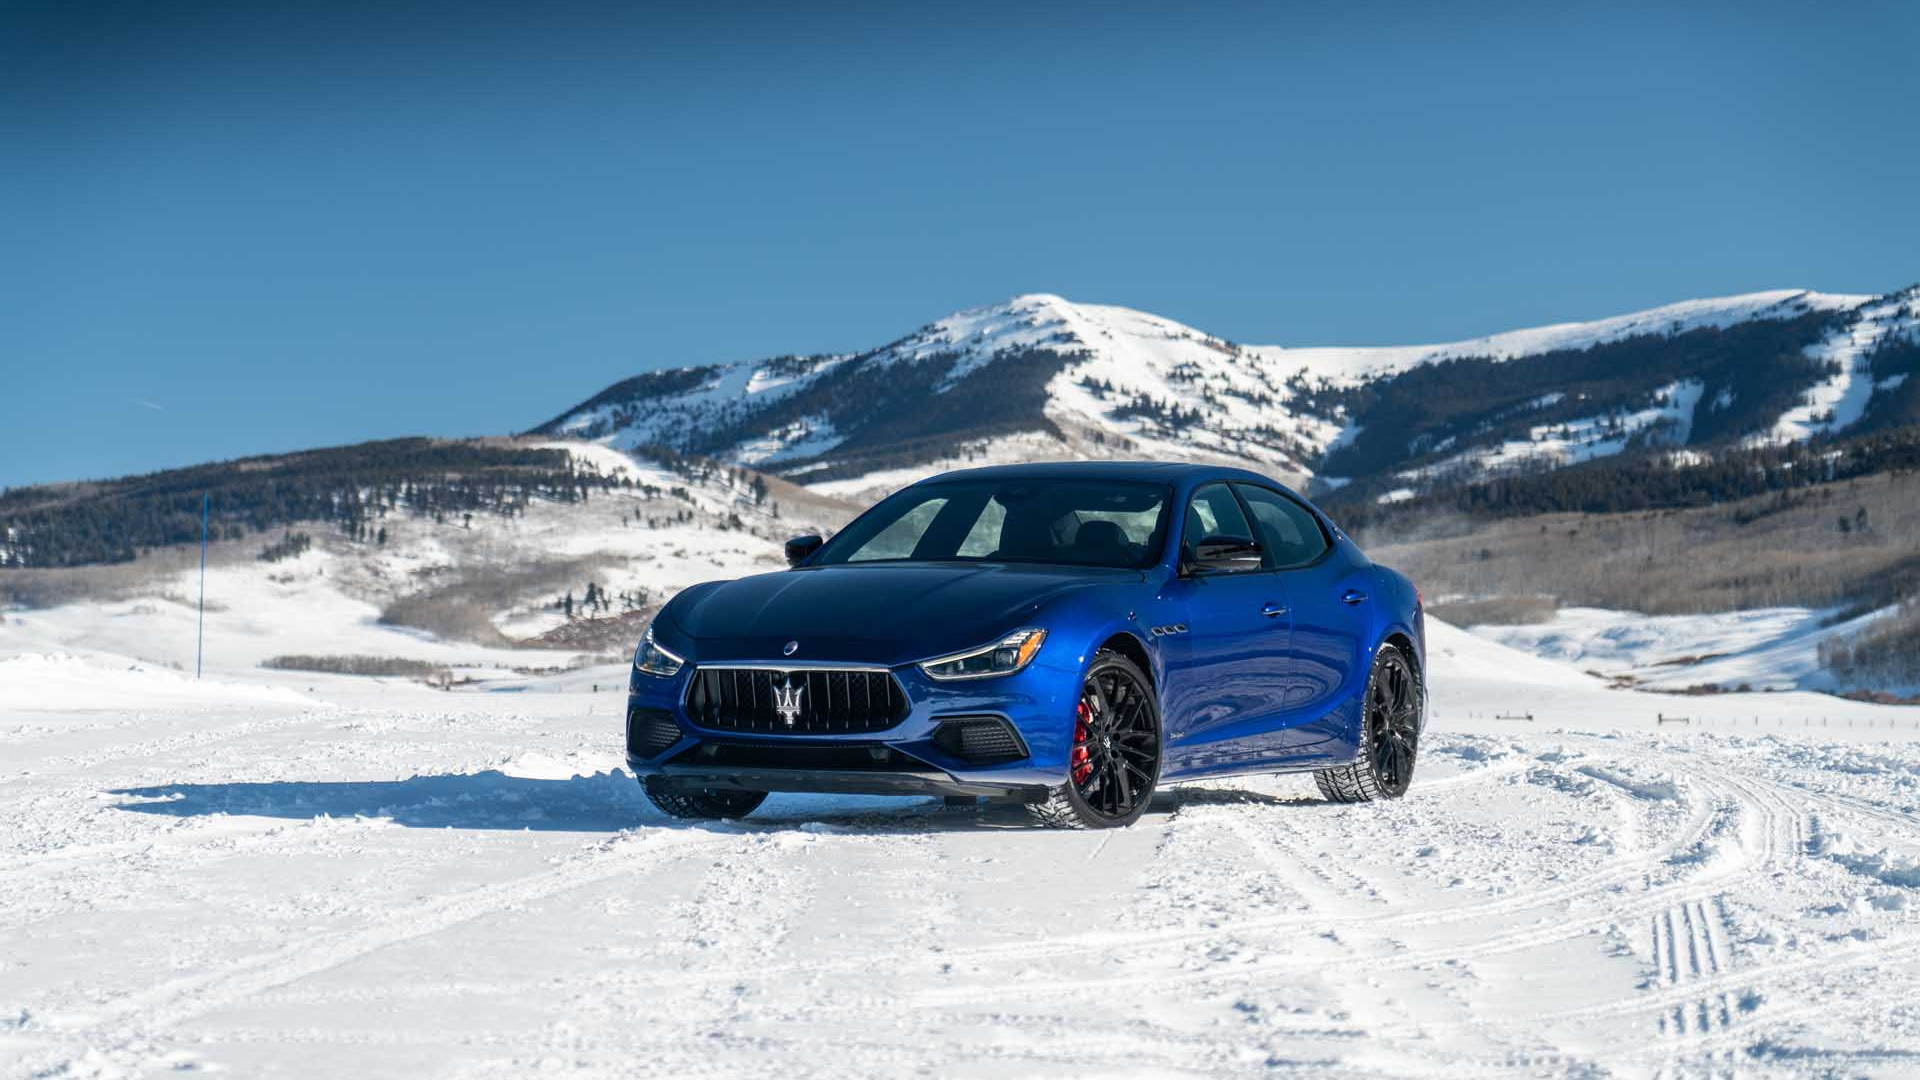 Maserati Ice Drive